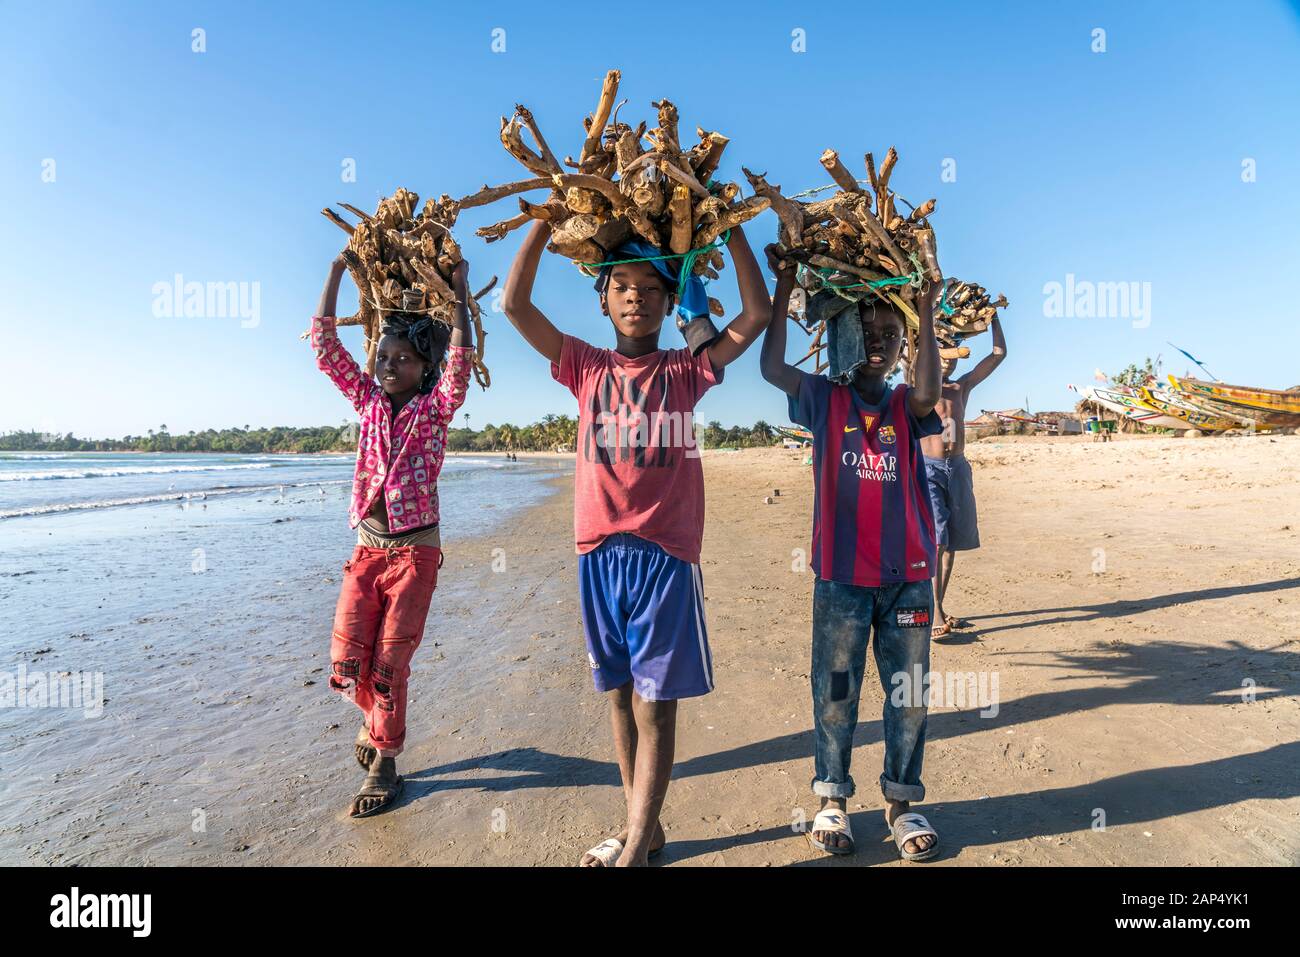 Kinder am Strand tragen Brennholz Bündel auf dem Kopf, Sanyang, Gambia, Westafrika | niños en la playa llevando los manojos de leña sobre sus él Foto de stock